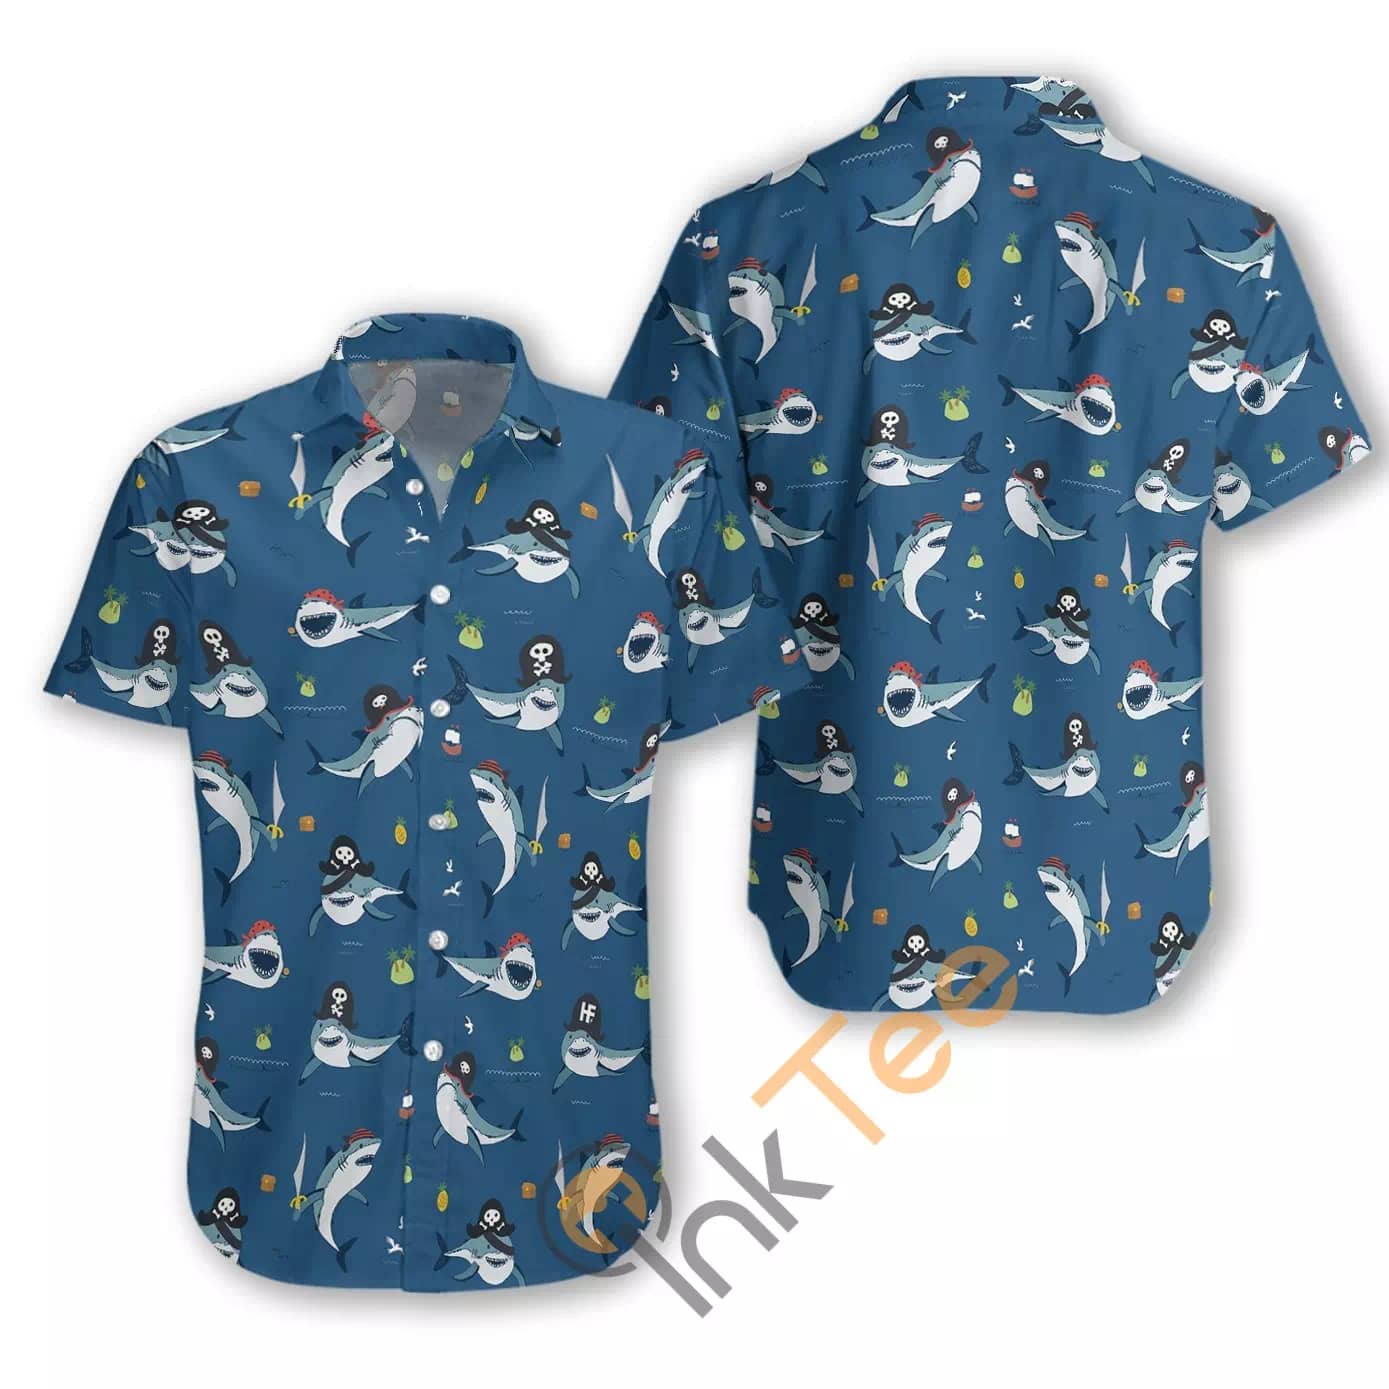 Shark Pirates N832 Hawaiian shirts